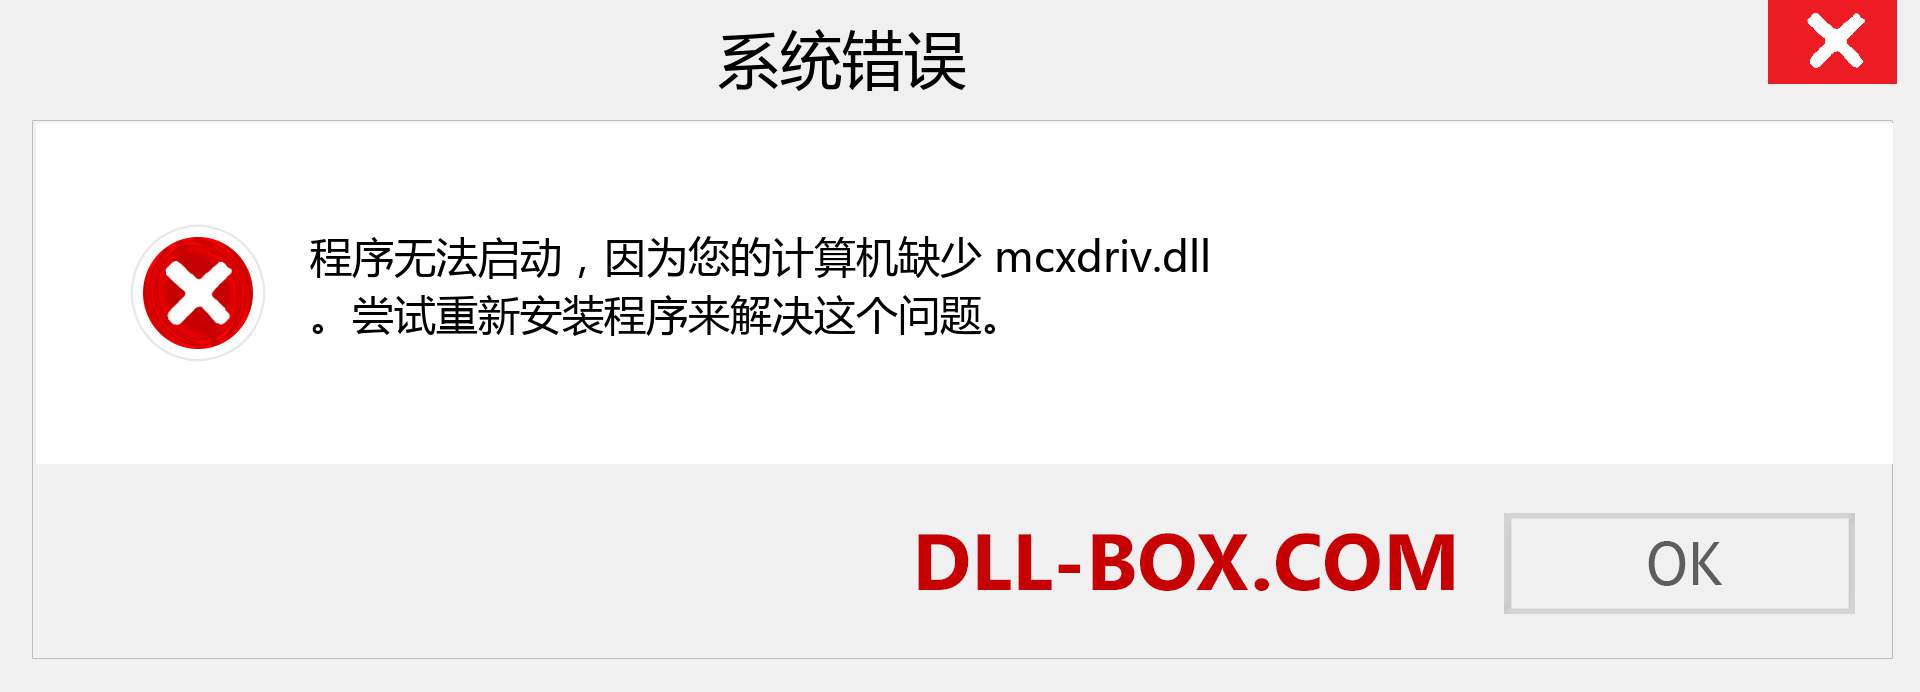 mcxdriv.dll 文件丢失？。 适用于 Windows 7、8、10 的下载 - 修复 Windows、照片、图像上的 mcxdriv dll 丢失错误